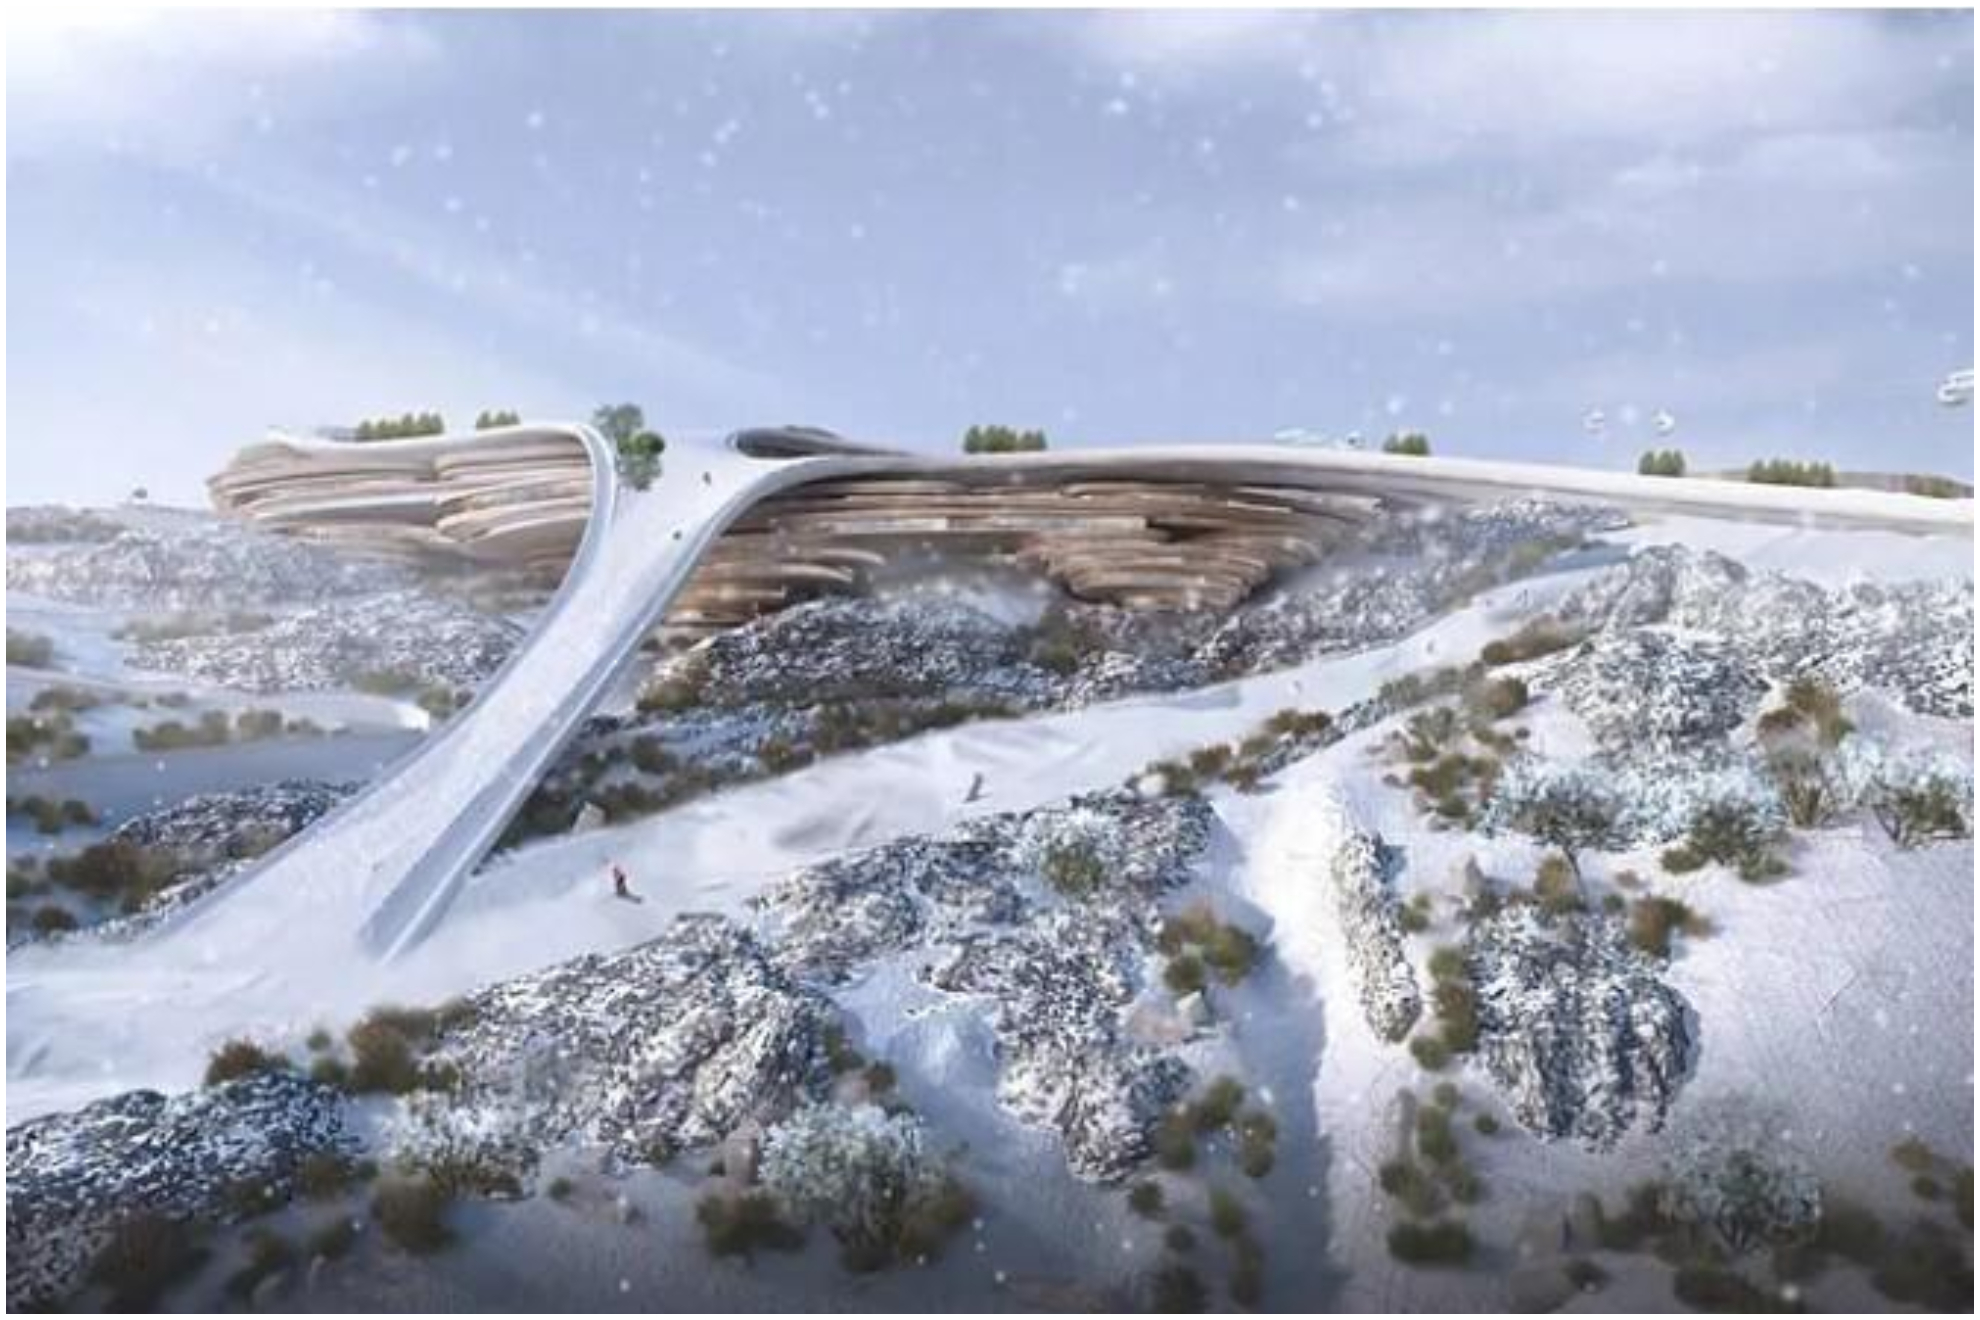 Trojena: la futurista estación de esquí en el desierto de Arabia